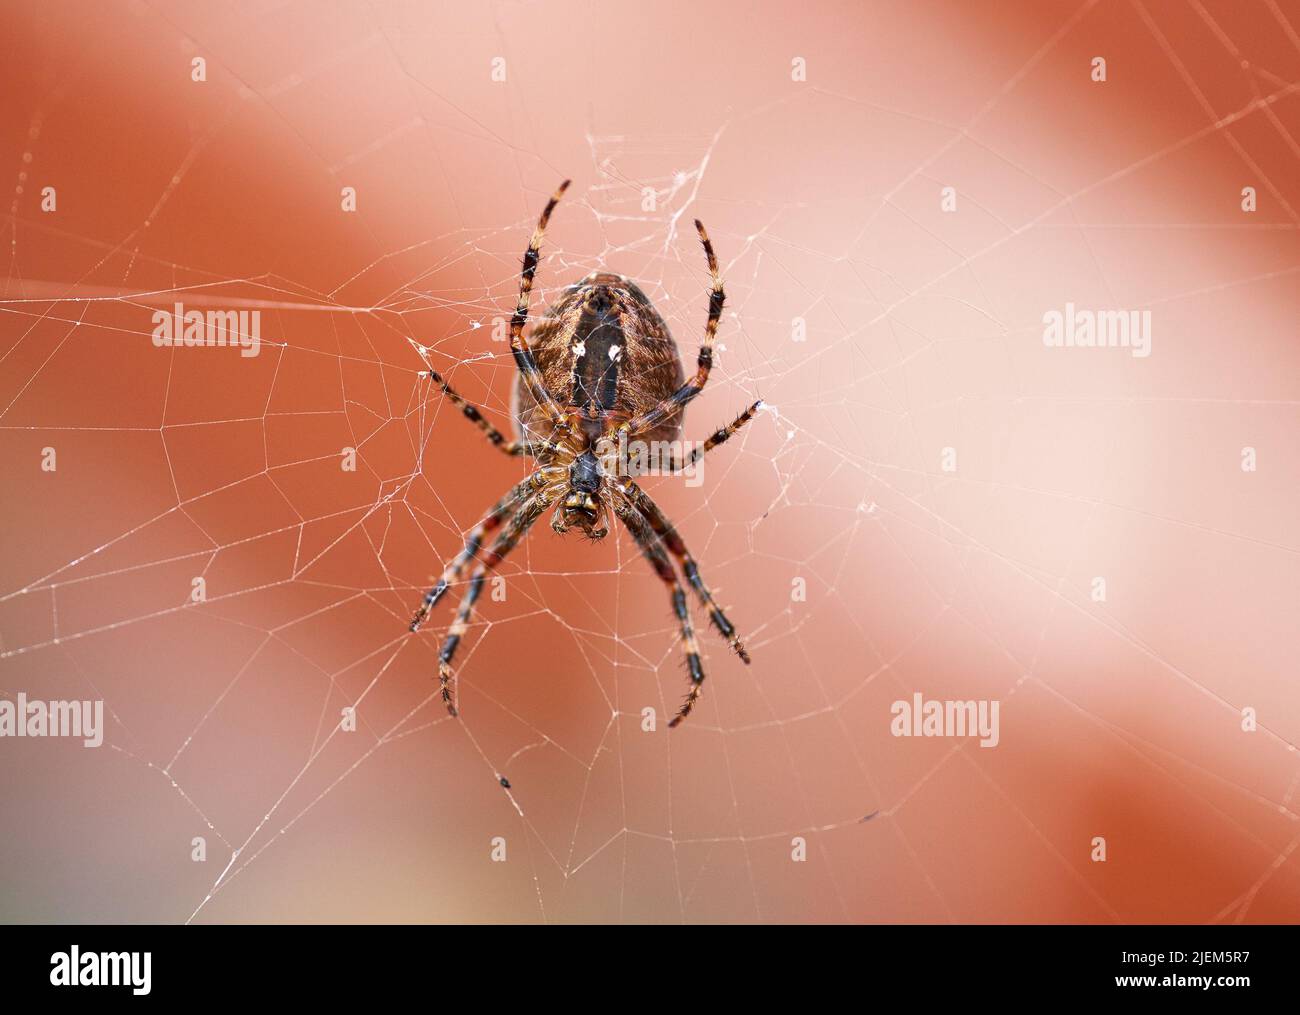 Nahaufnahme einer Spinne in einem Netz von unten, isoliert vor einem weiß-orangefarbenen Hintergrund. Gestreifter brauner und schwarzer Walnussweber Spider. Die Nuctenea Stockfoto